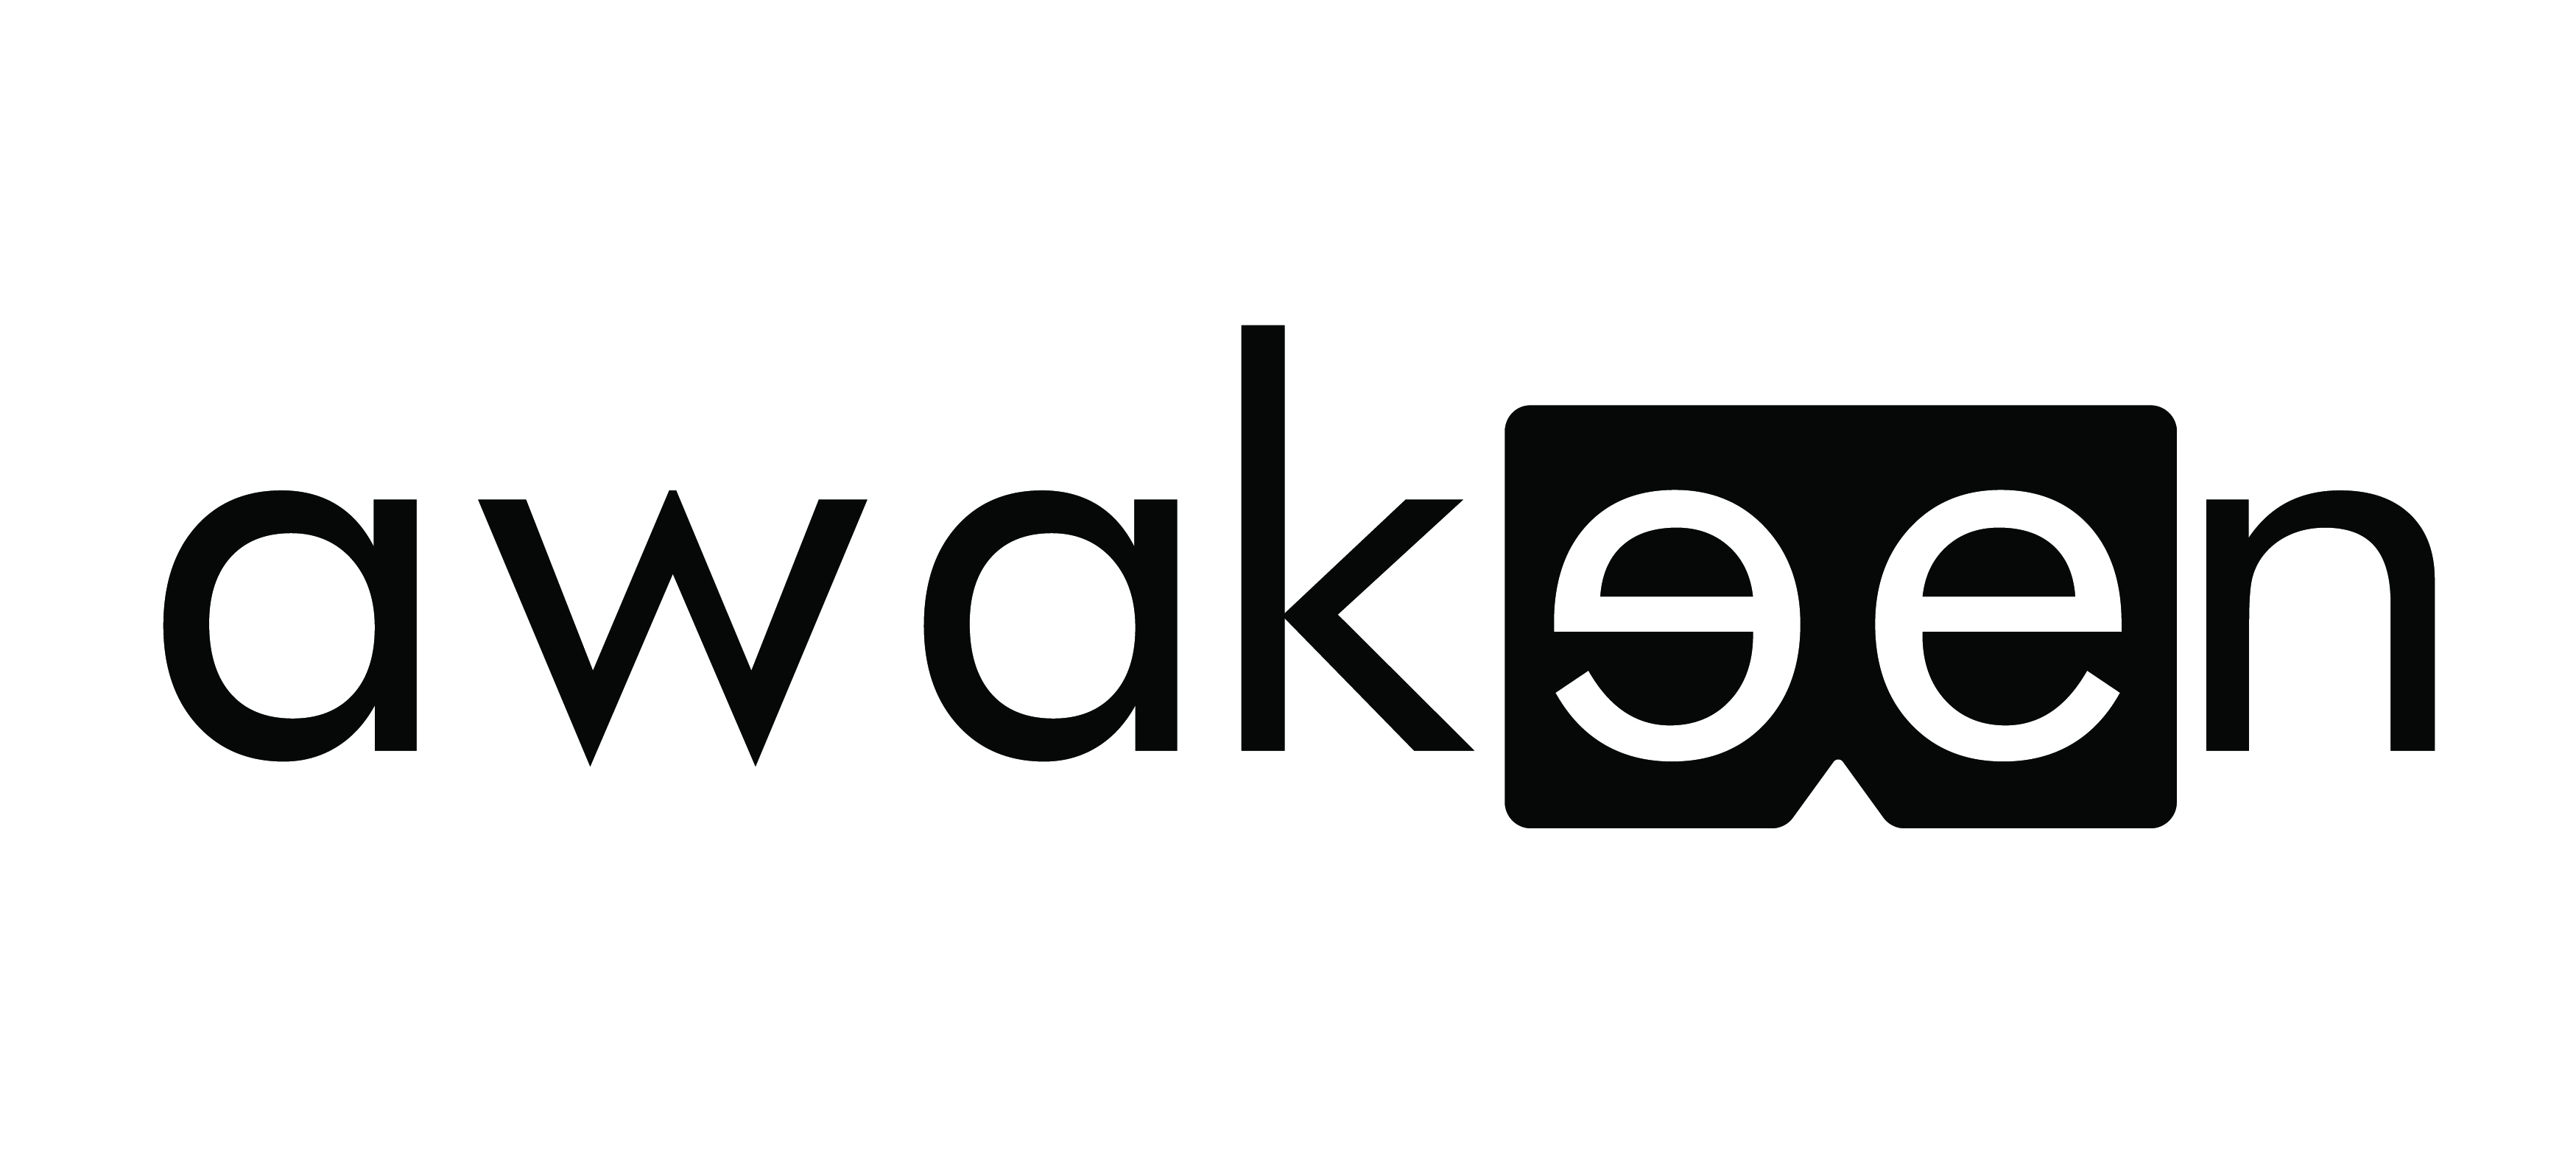 Awakeen Studio - We're making AR-VR-MR based mobile apps & games.